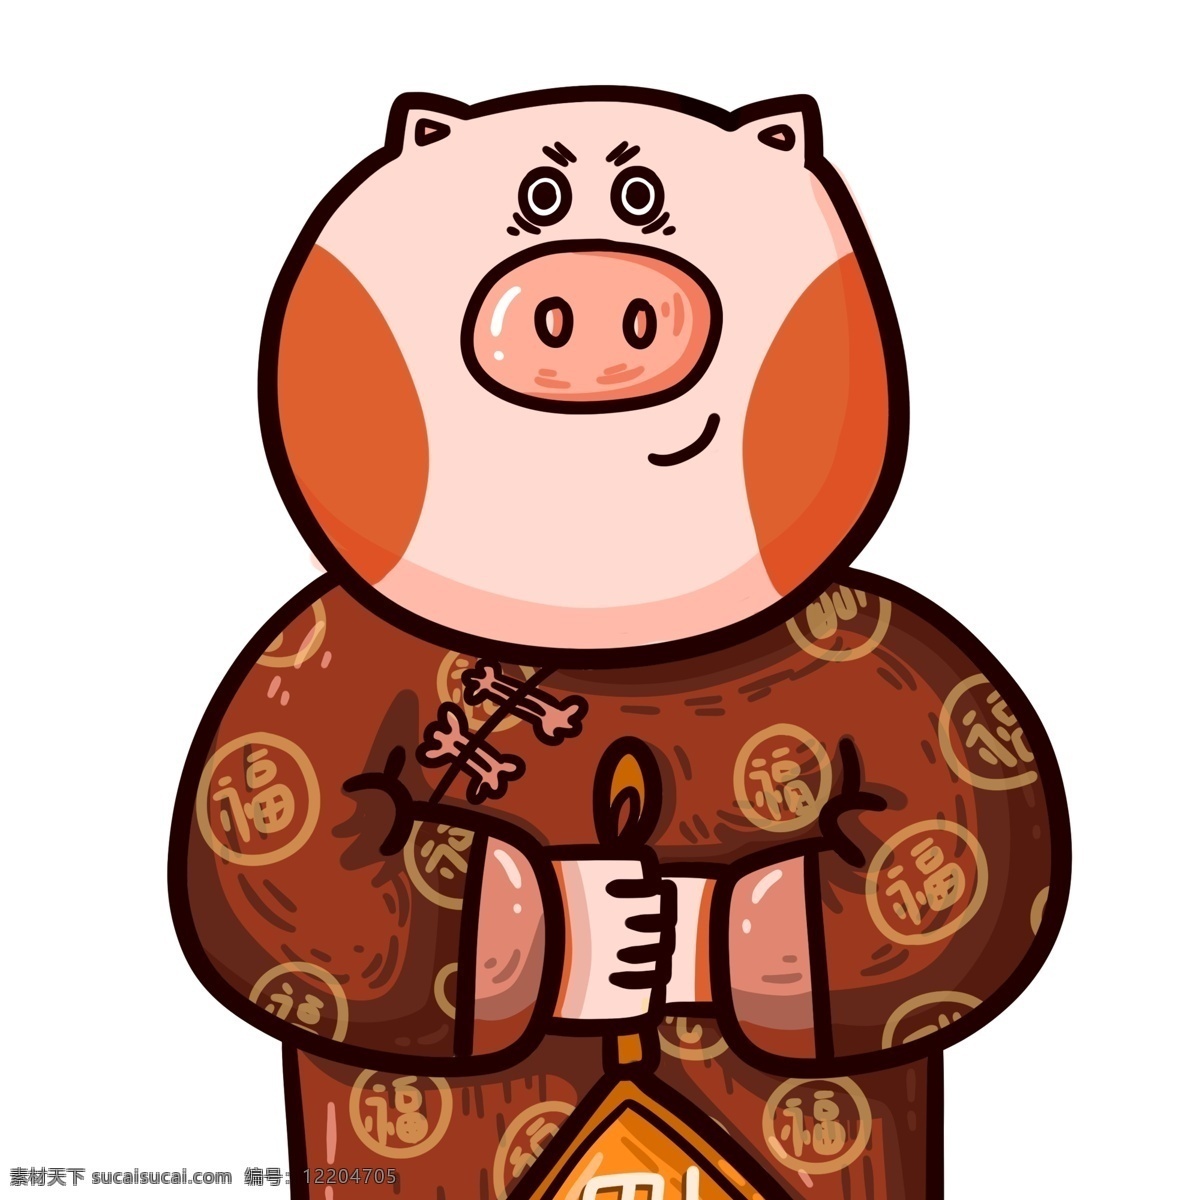 卡通 潮 漫 贺岁 小 猪 元素 红色 喜庆 中国风 春节 插画 潮漫 手绘 小猪 新春 新年 猪年 2019年 小猪形象 猪年形象 拜年